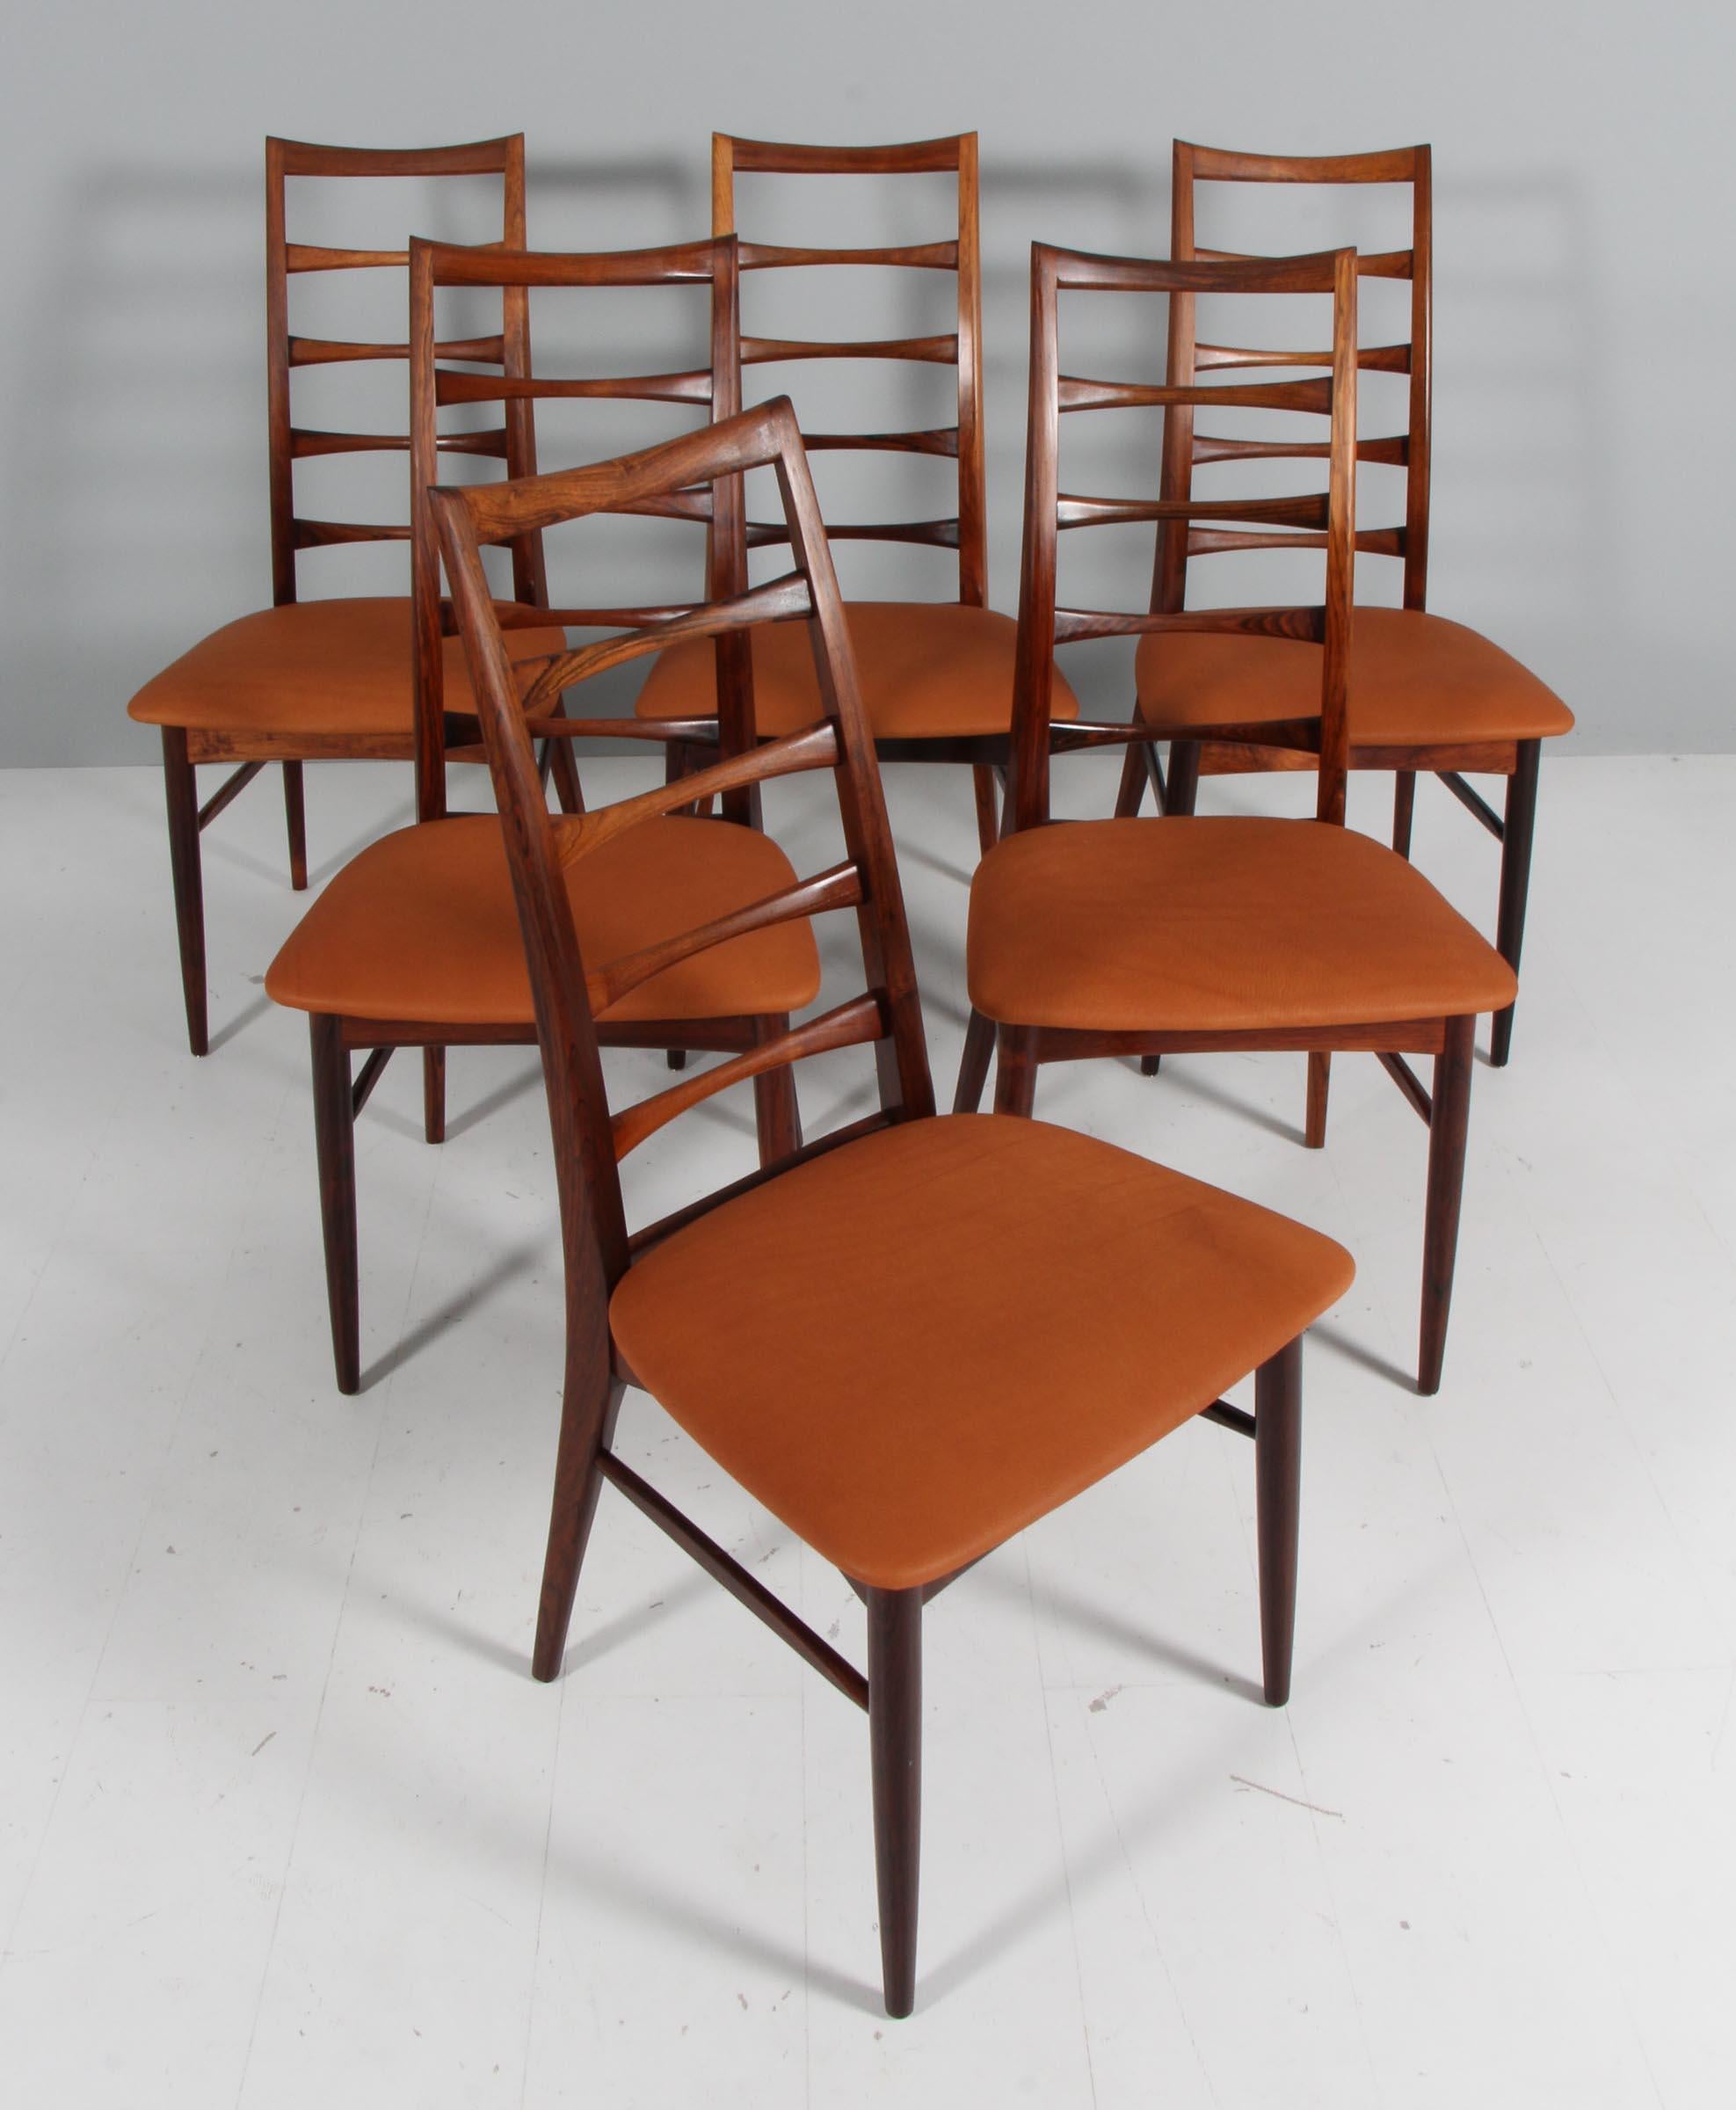 Ensemble de chaises de salle à manger Niels Koefoed en bois de rose

Nouvelle garniture en cuir pleine fleur aniline de couleur havane.

Modèle Lis, fabriqué par Niels Koefoeds Møbelfabrik Hornslet, années 1960.

